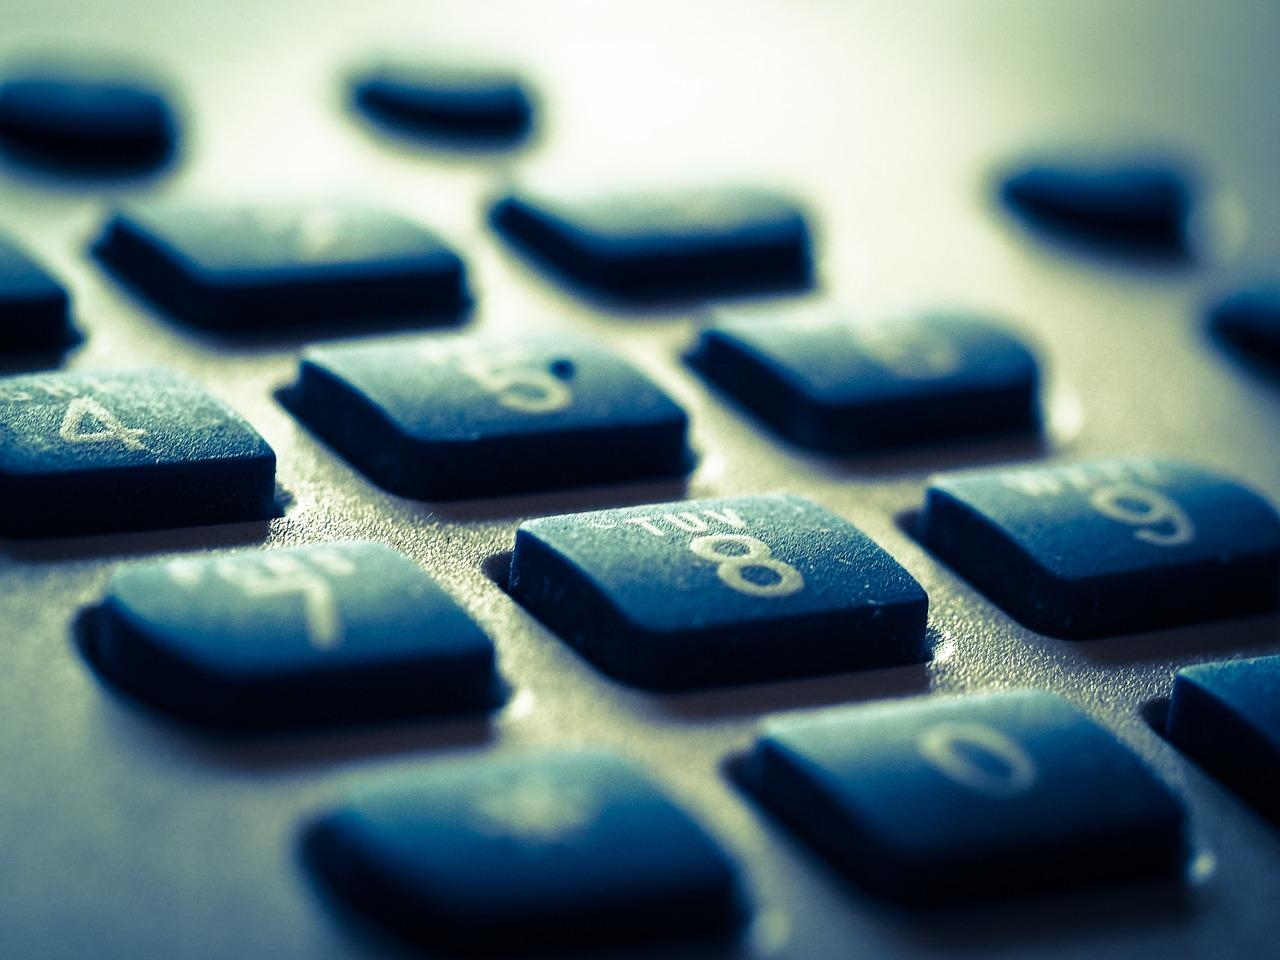 a close-up of a calculator